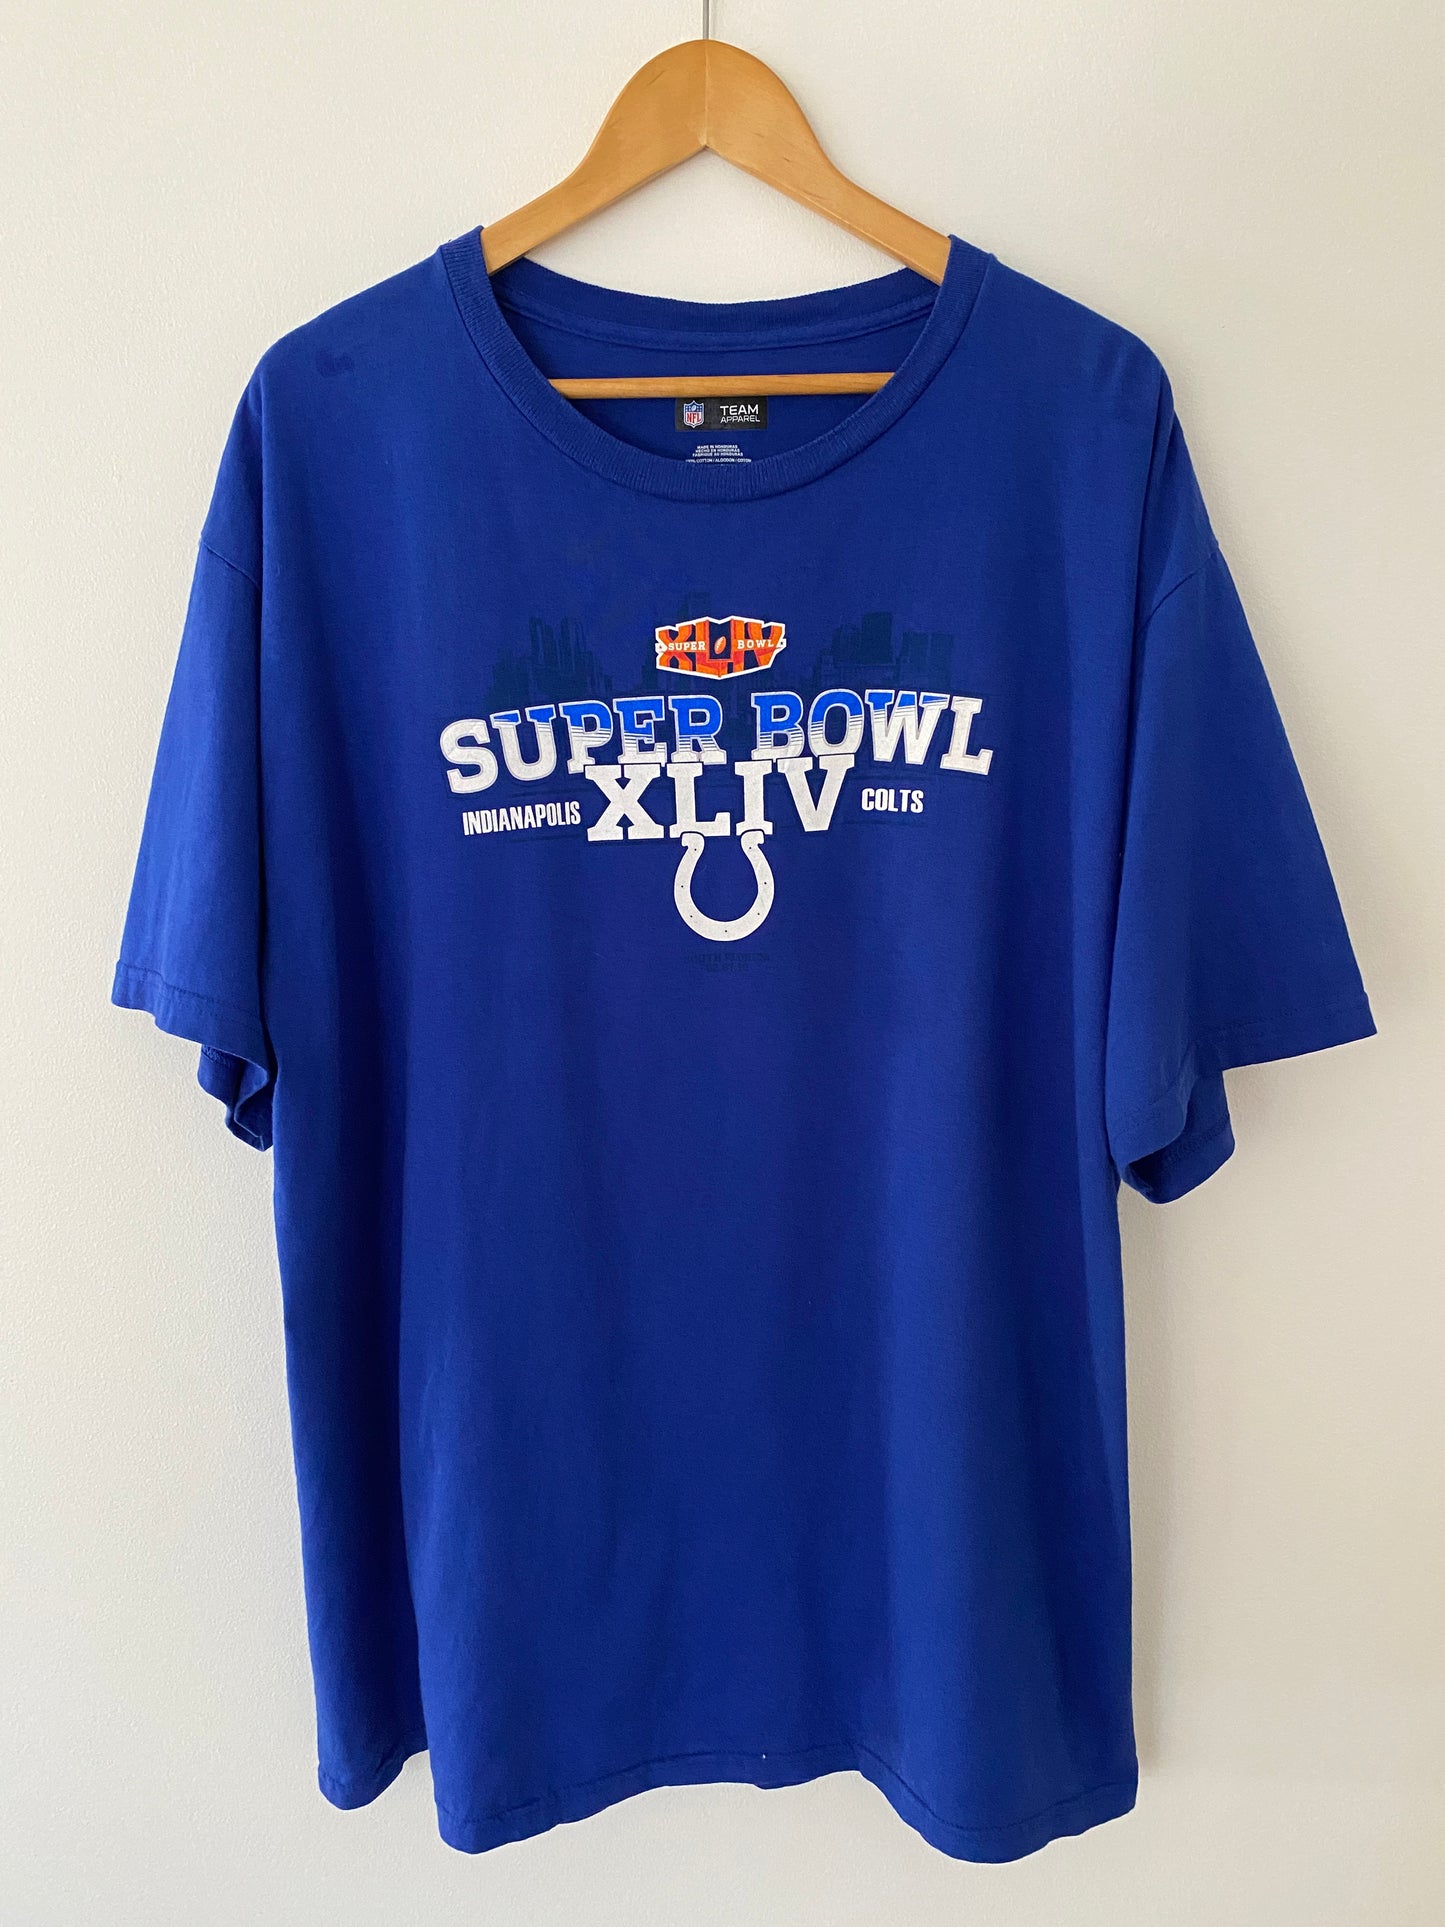 2010 Super Bowl XLIV Indianapolis Colts T-Shirt - XL